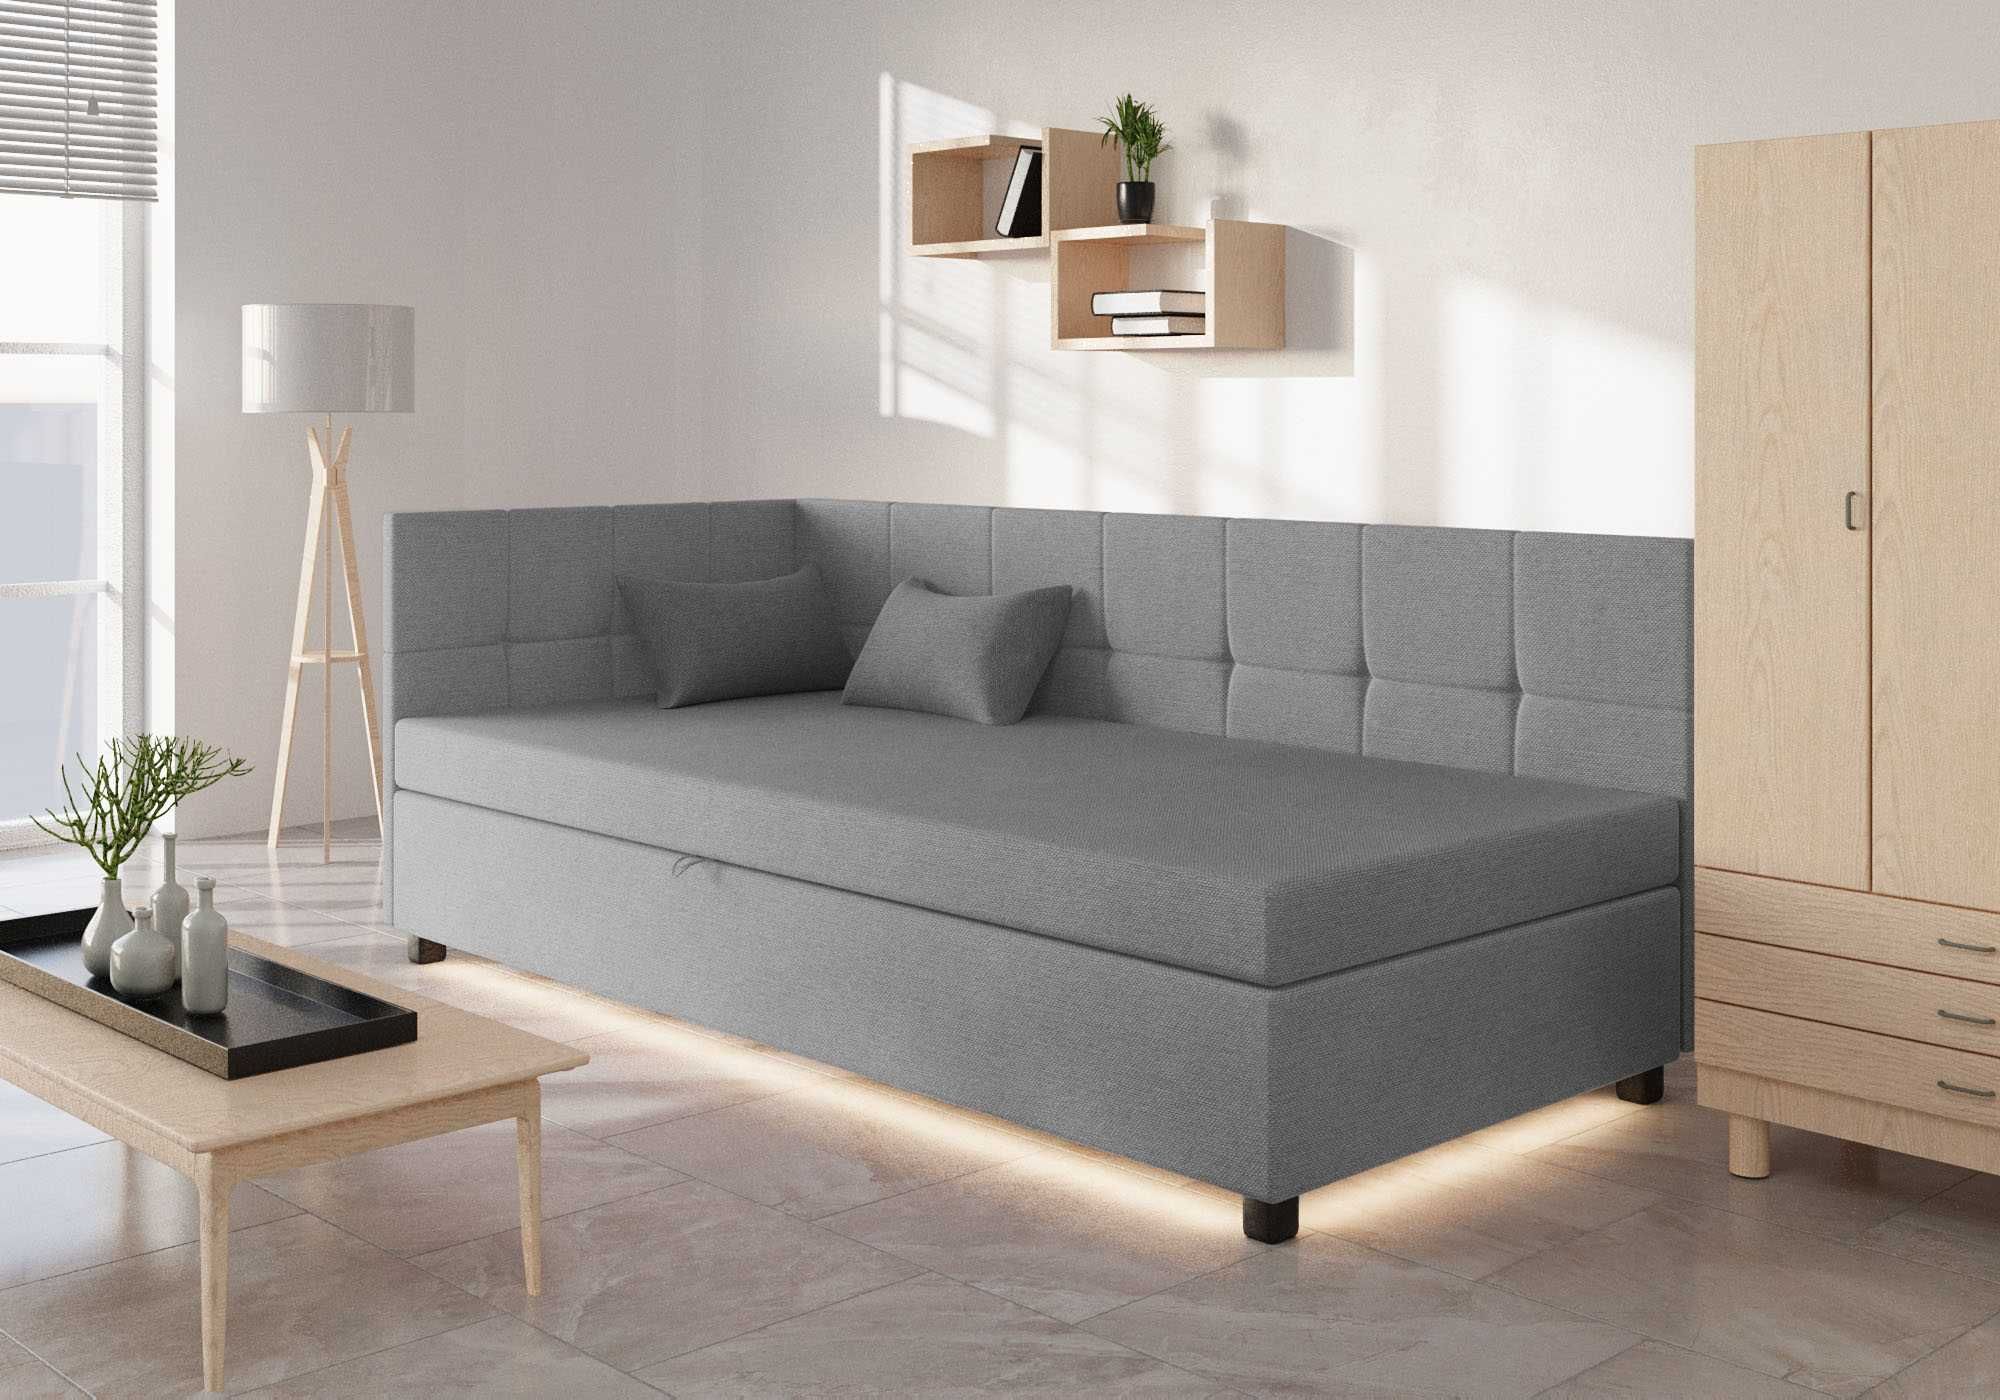 Tapczan jednoosobowy łóżko młodzieżowe sofa kanapa pojemnik materac